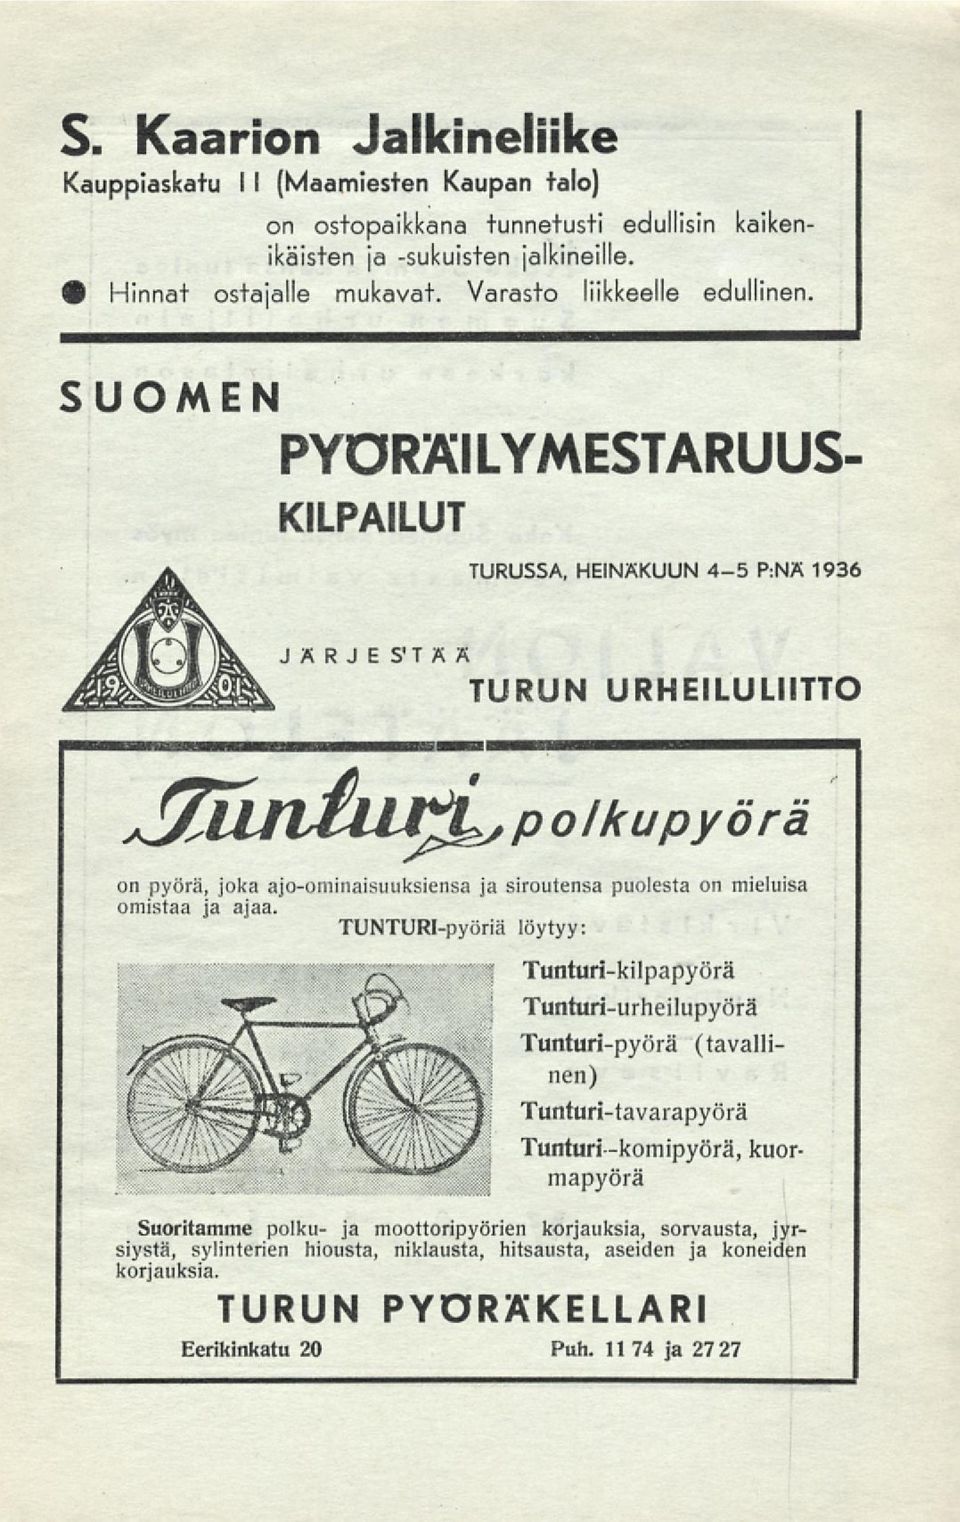 SUOMEN PYÖRÄILYMESTARUUS- KILPAILUT TURUSSA, HEINÄKUUN 4-5 P:NÄ 1936 JÄRJESTÄÄ TURUN URHEILULIITTO 3un iu^polkupyörä on pyörä, joka ajo-ominaisuuksiensa ja siroutensa puolesta on